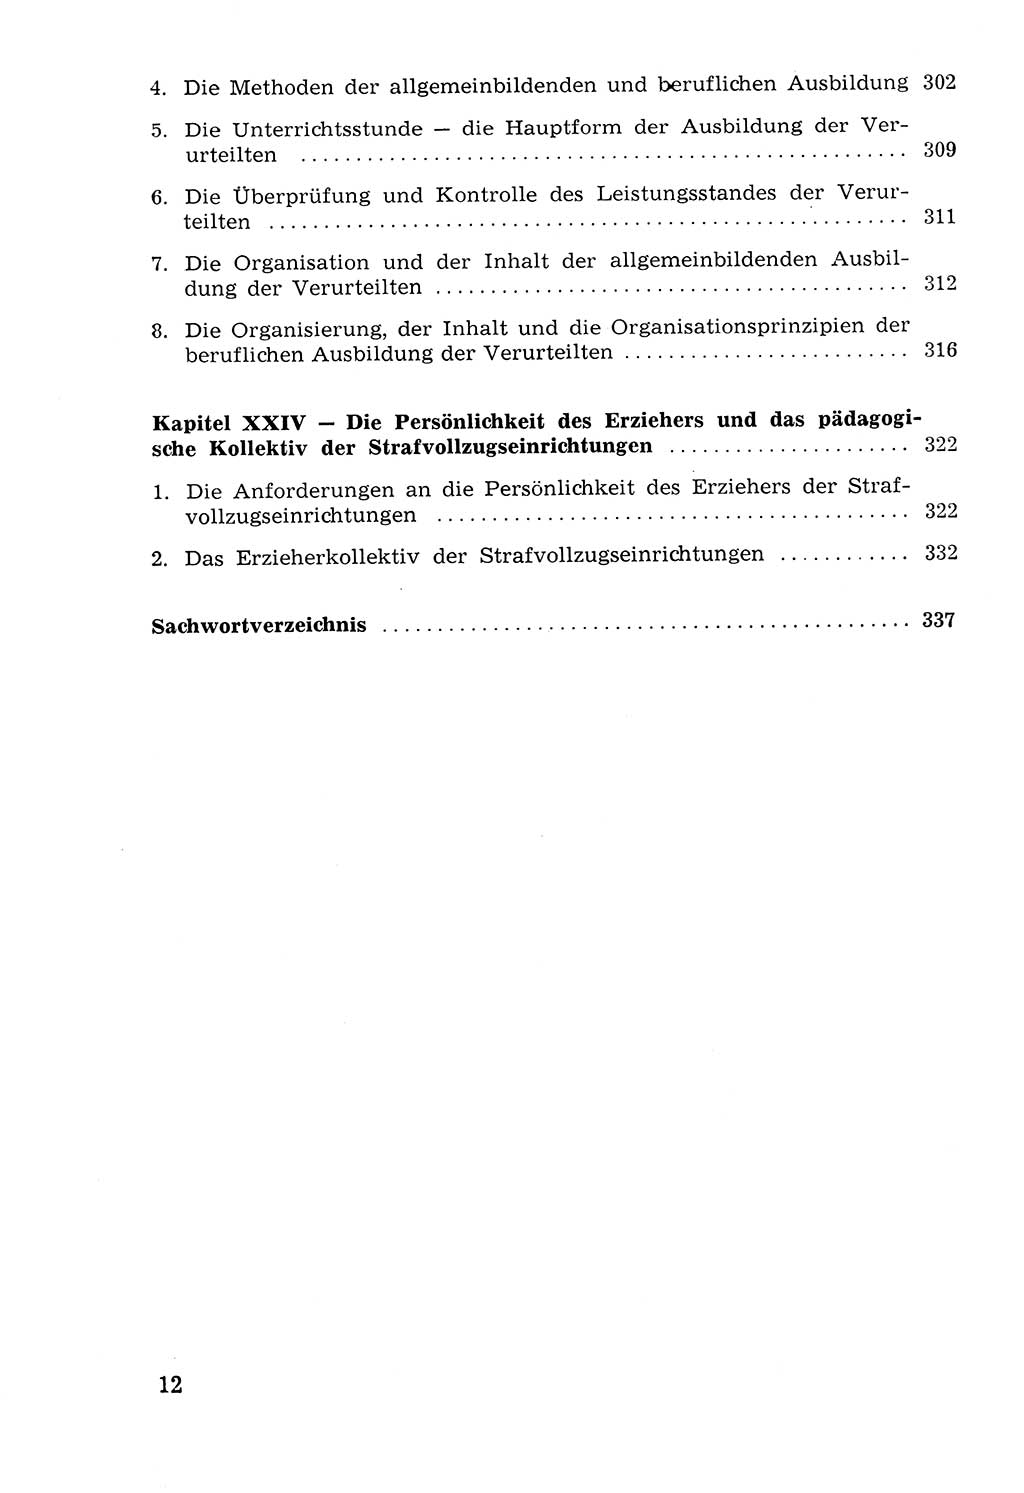 Lehrbuch der Strafvollzugspädagogik [Deutsche Demokratische Republik (DDR)] 1969, Seite 12 (Lb. SV-Pd. DDR 1969, S. 12)